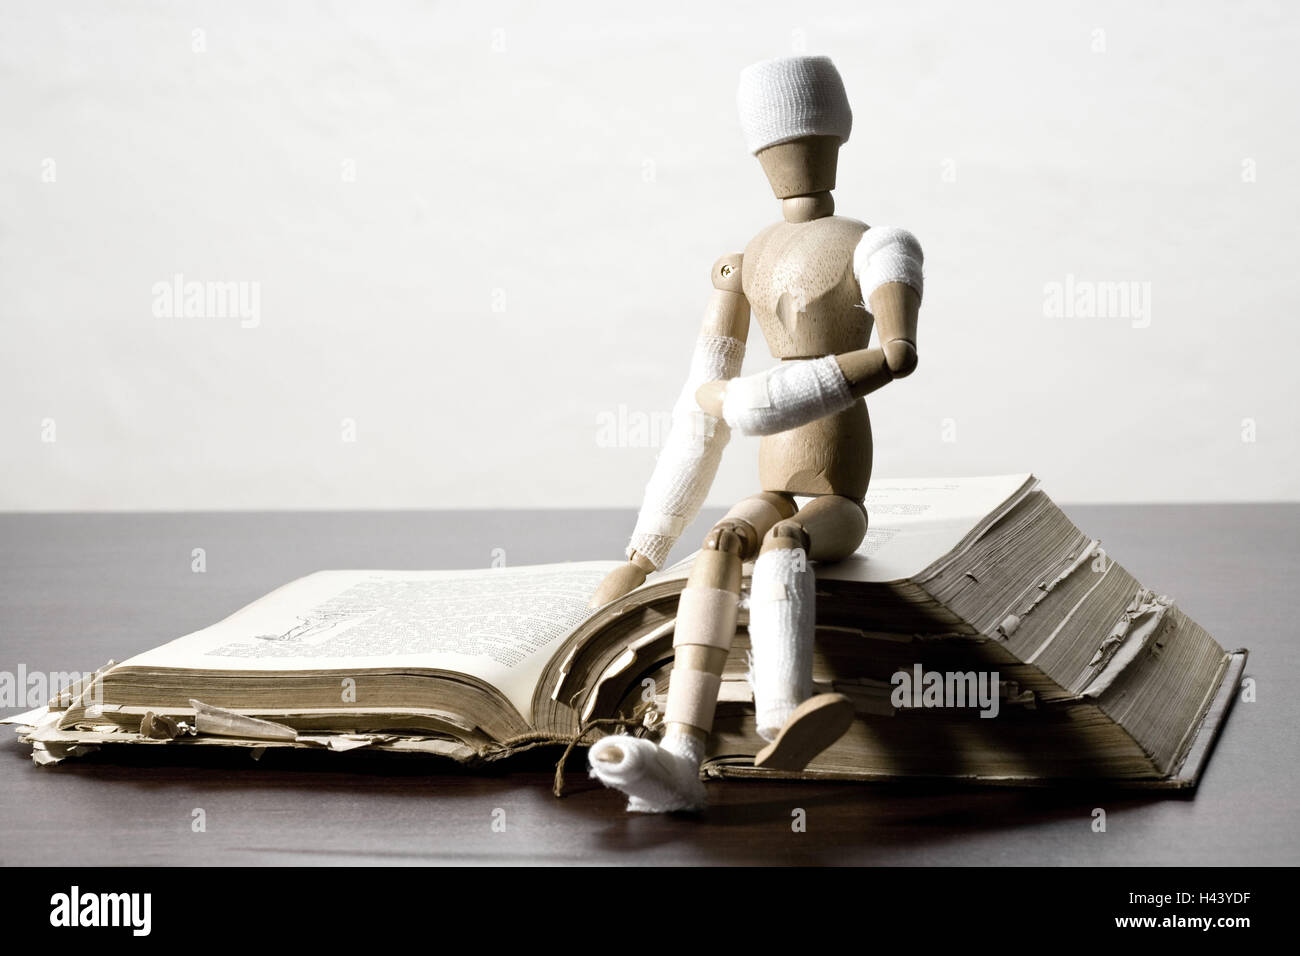 Manikin, bandages, symbol, injury, book, old, sitting, Stock Photo